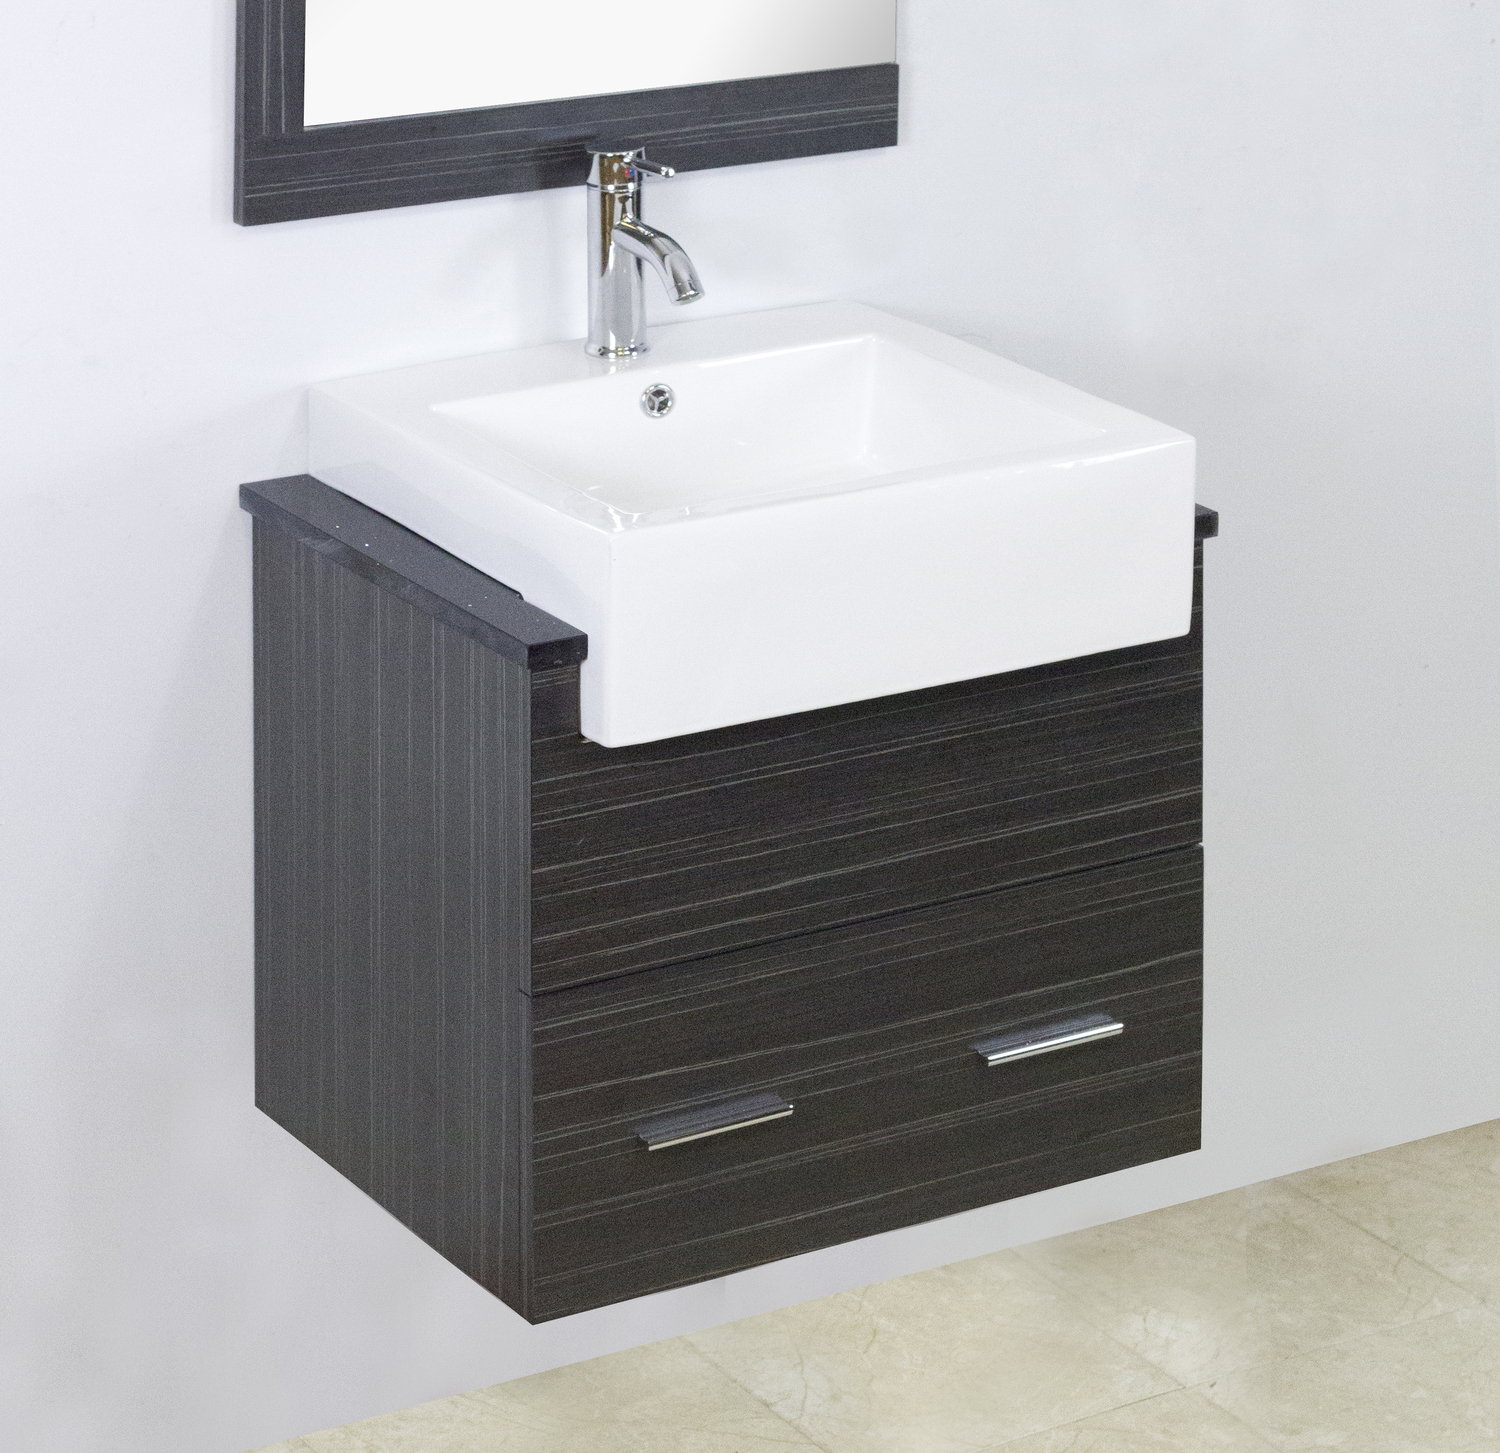 30 inch bathroom vanity with drawers American Imaginations Vanity Set Bathroom Vanities Dawn Grey Modern